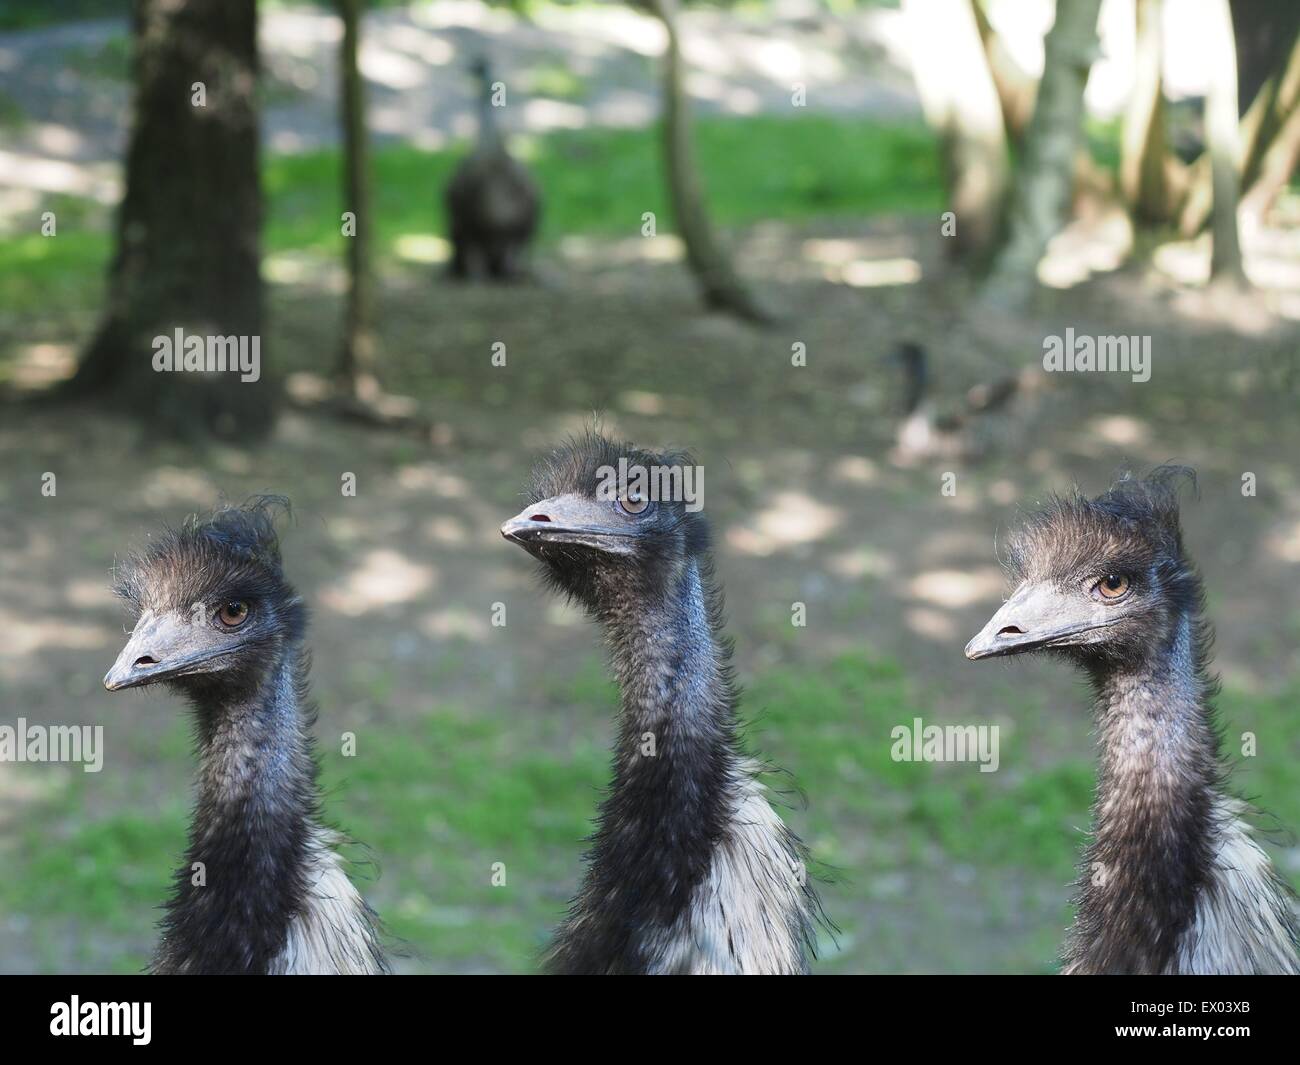 three bird ostrich on forest background Stock Photo